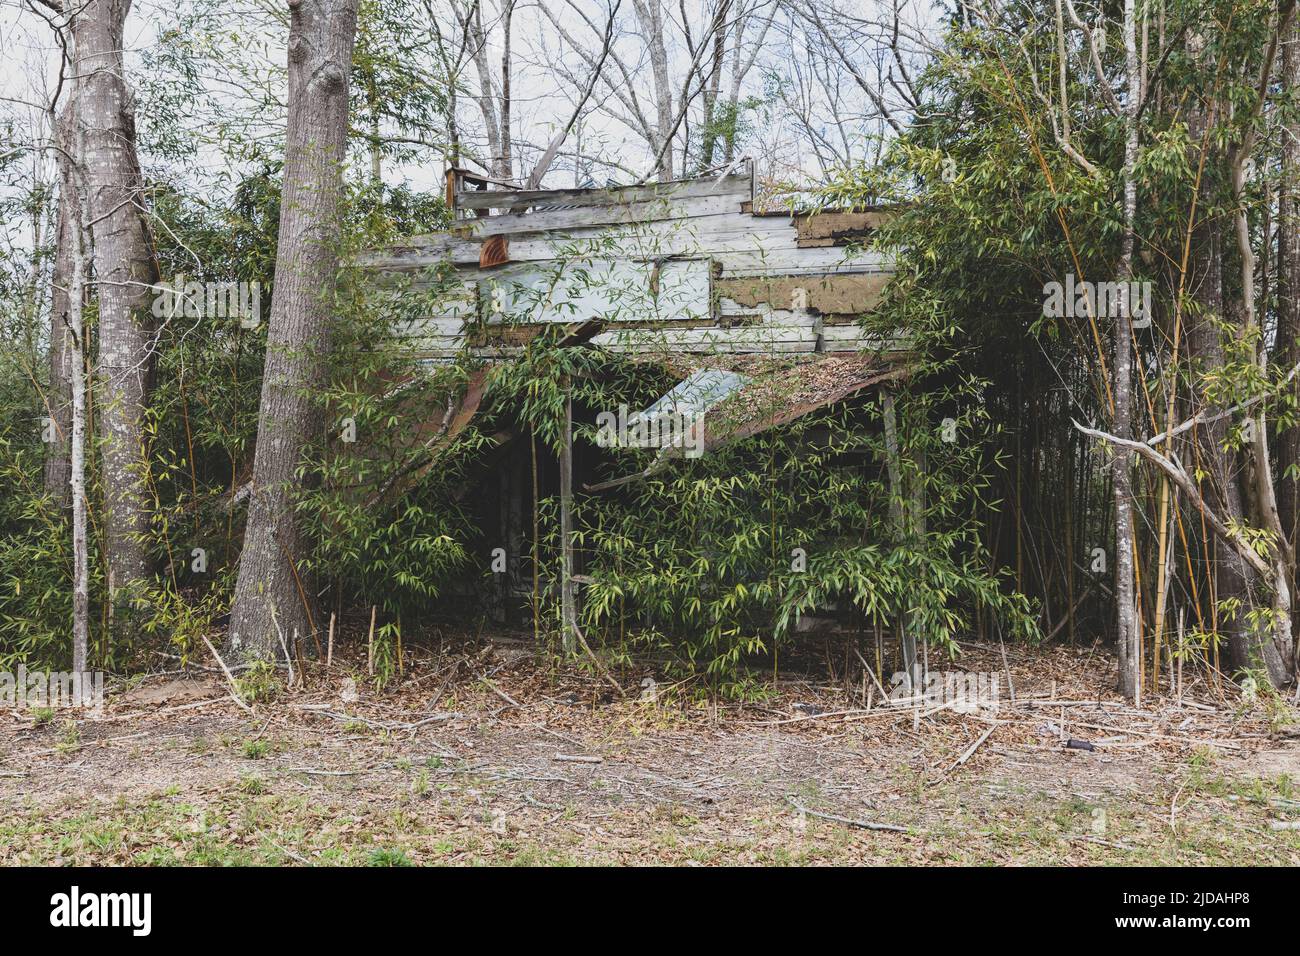 Une ferme rurale ou une petite maison abandonnée et en ruine, surcultivée avec des plantes et des arbustes. Banque D'Images